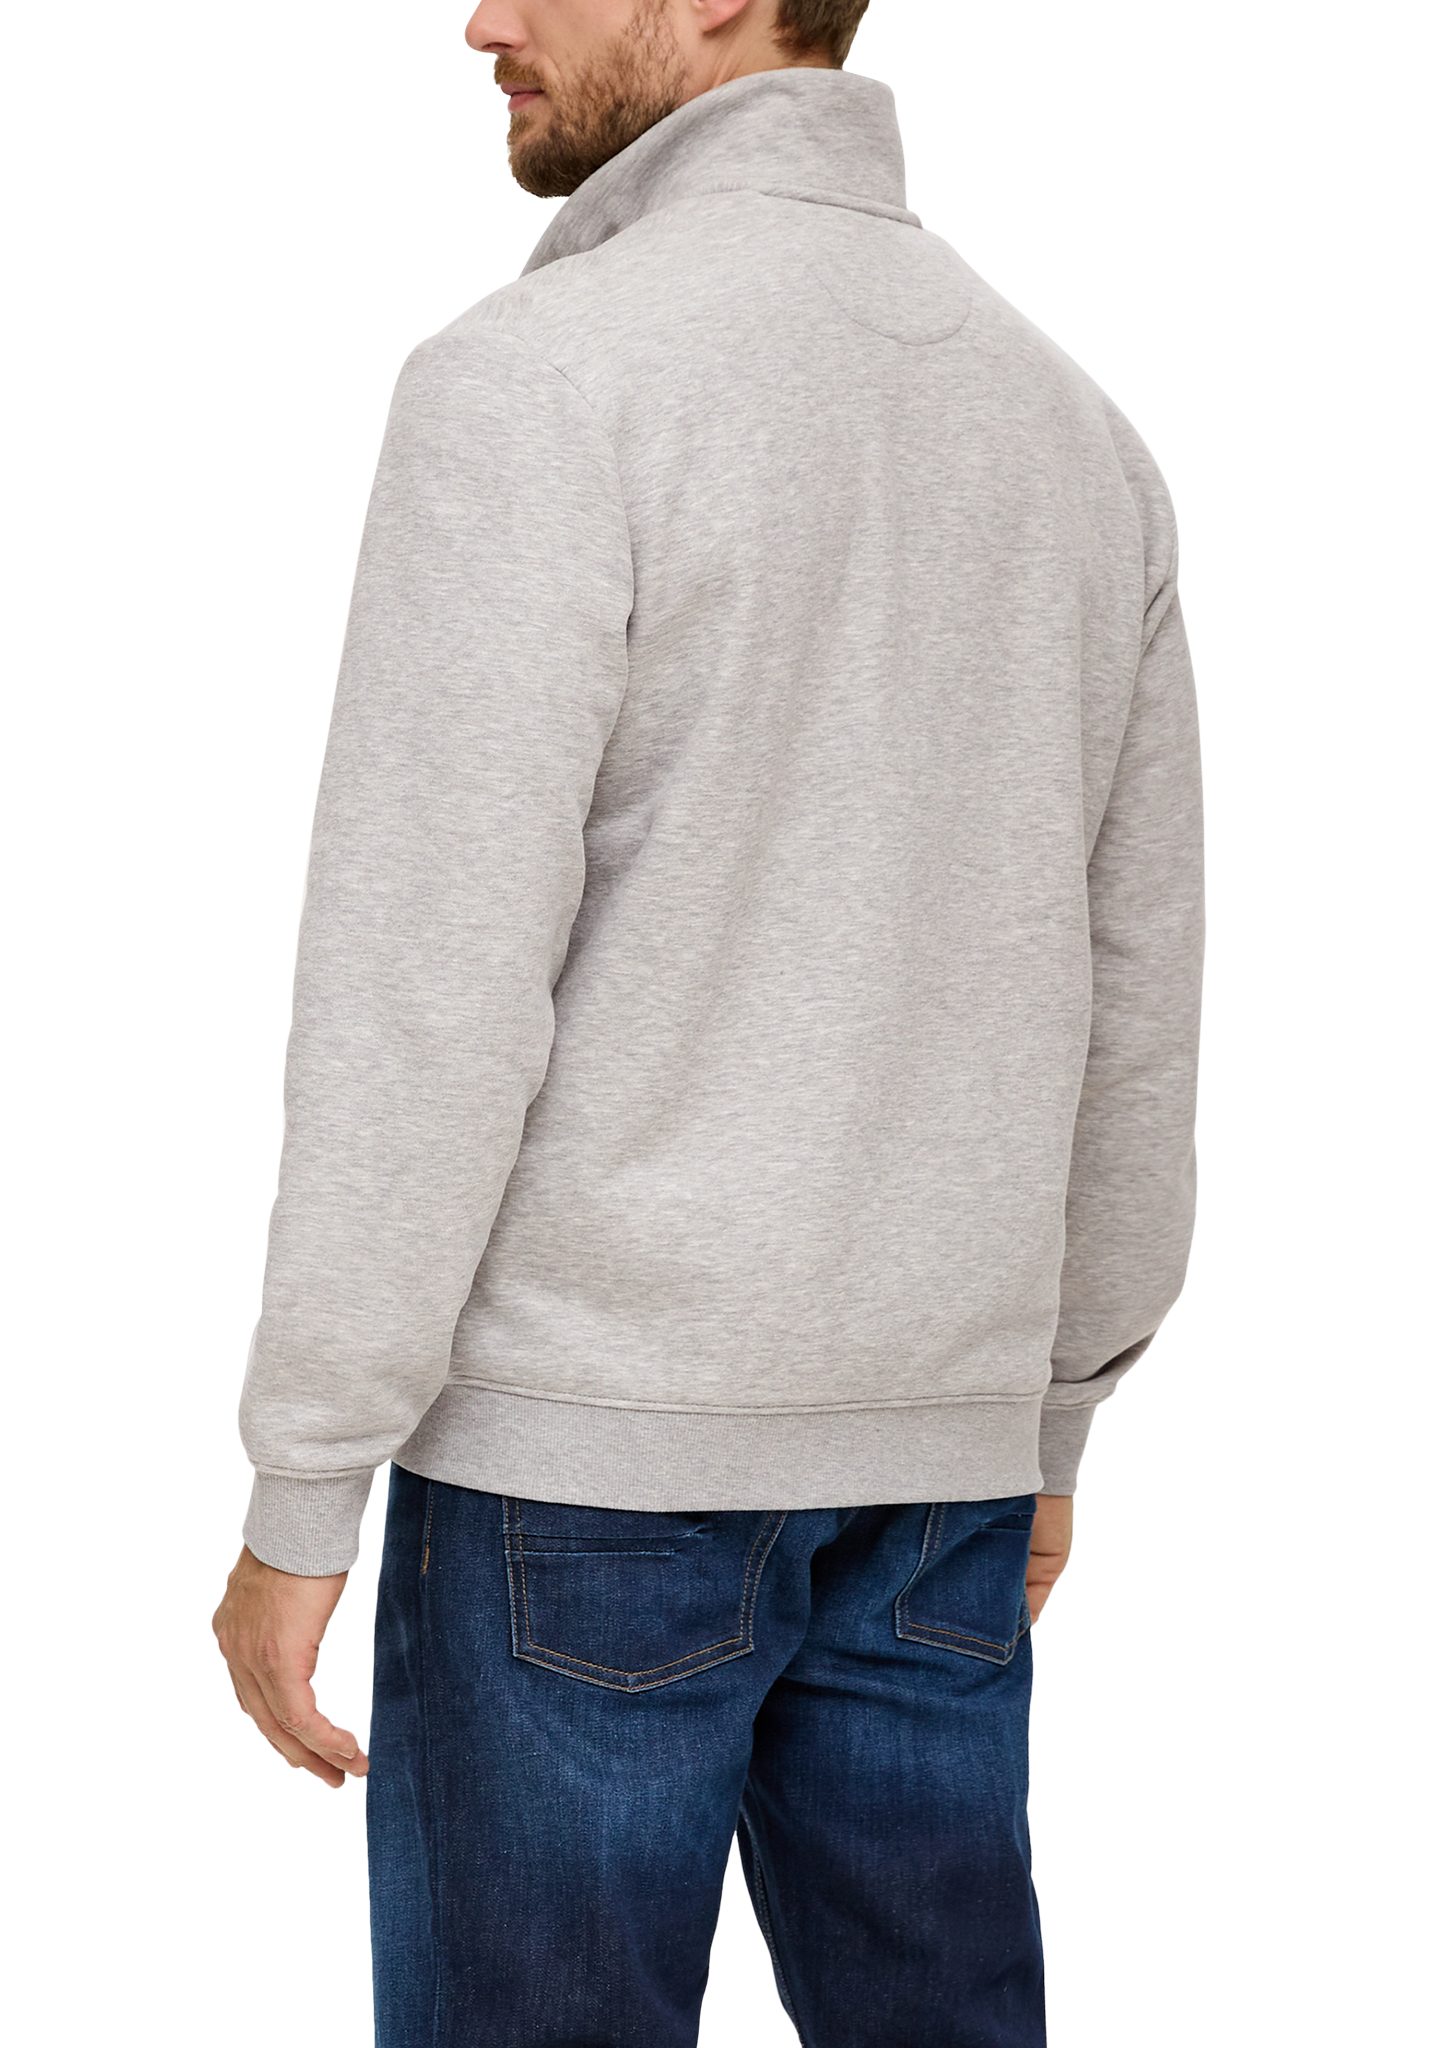 Stehkragen grau Streifen-Detail Logo, s.Oliver Allwetterjacke mit Sweatshirt-Jacke meliert